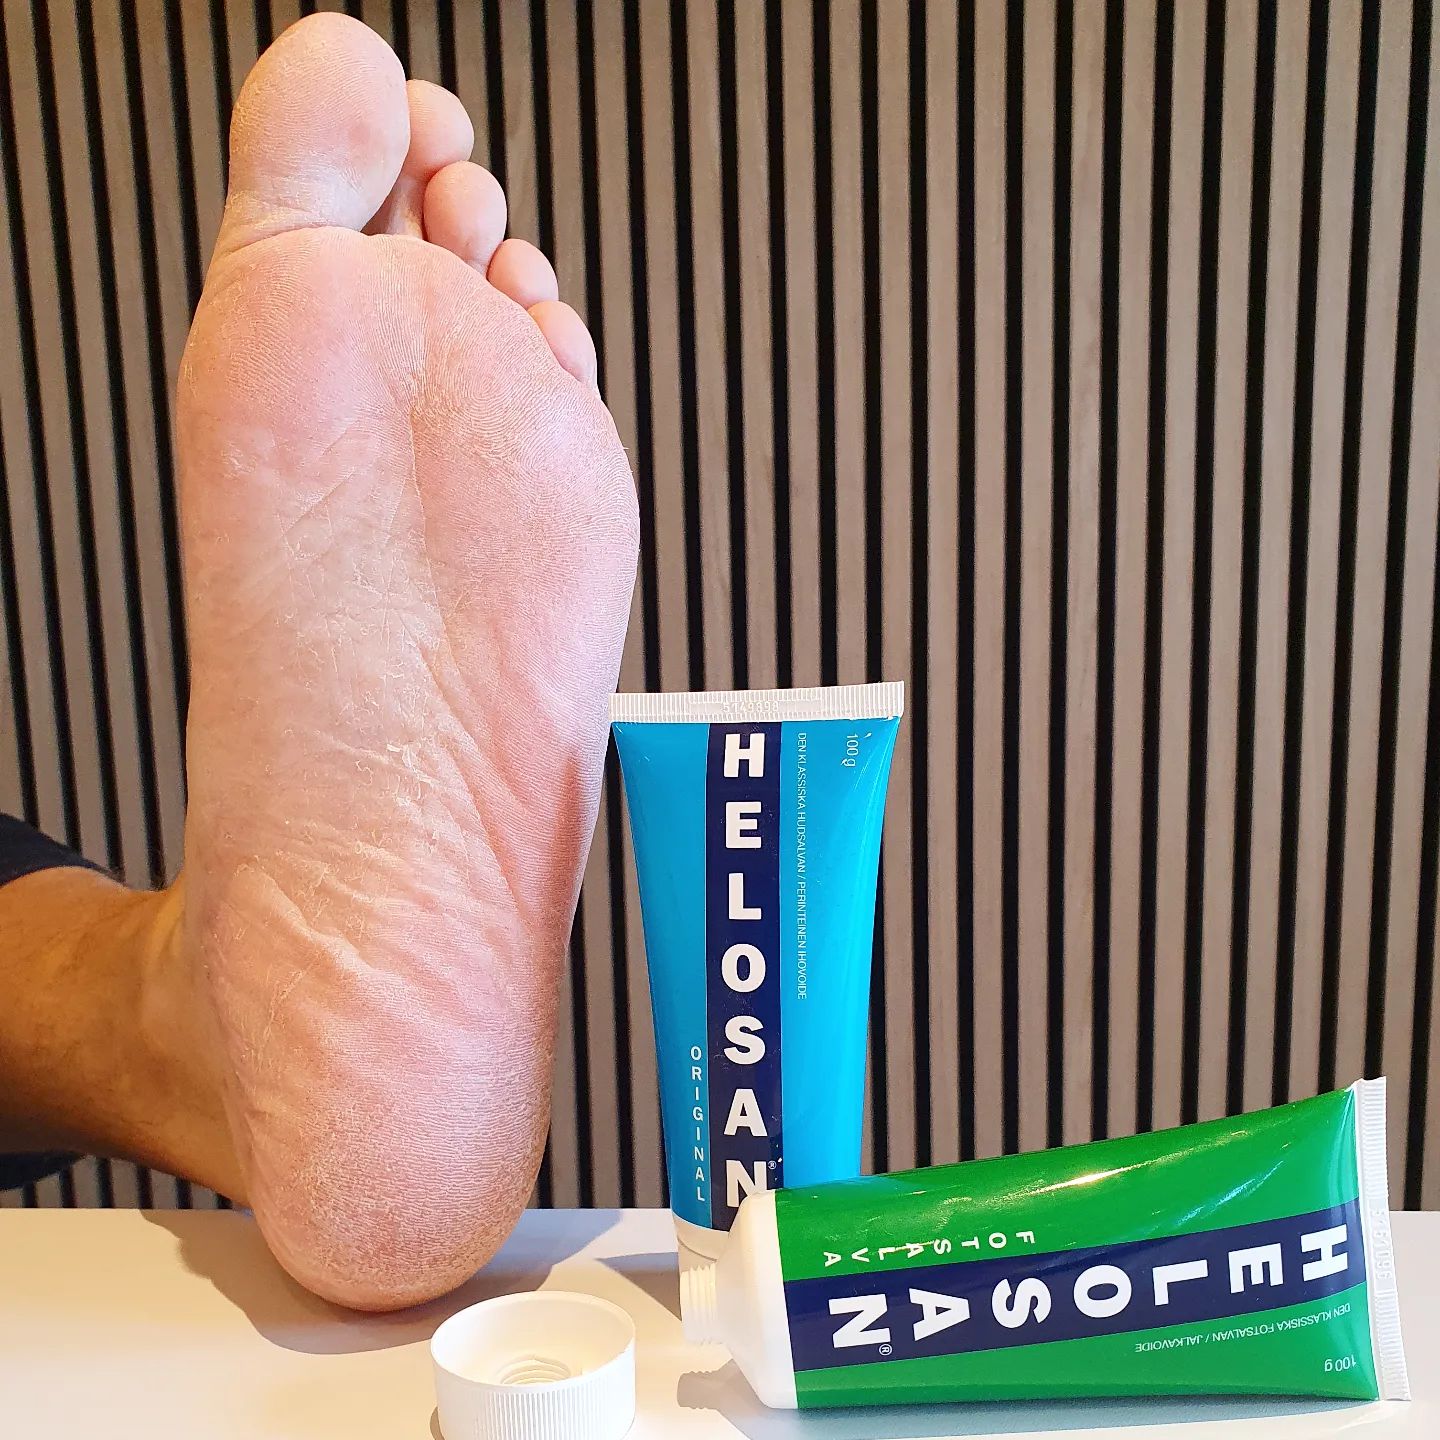 I samarbejde med @helosanskincare  så er jeg og familien i gang med at teste Helosan fodsalve. Her er det min mands fod - som det ses har den  brug for lidt kærlig omsorg. Så han smøre lige nu fusserne ind i helosan fodsalve og kan allerede se end forbedring. 

#helosandkbuzz #Helosan75 #hudcreme #Veganskincare #buzzador # hudpleje #creme #fodsalve #selvforkælelse #livetsommor #sygeplejerske #tester